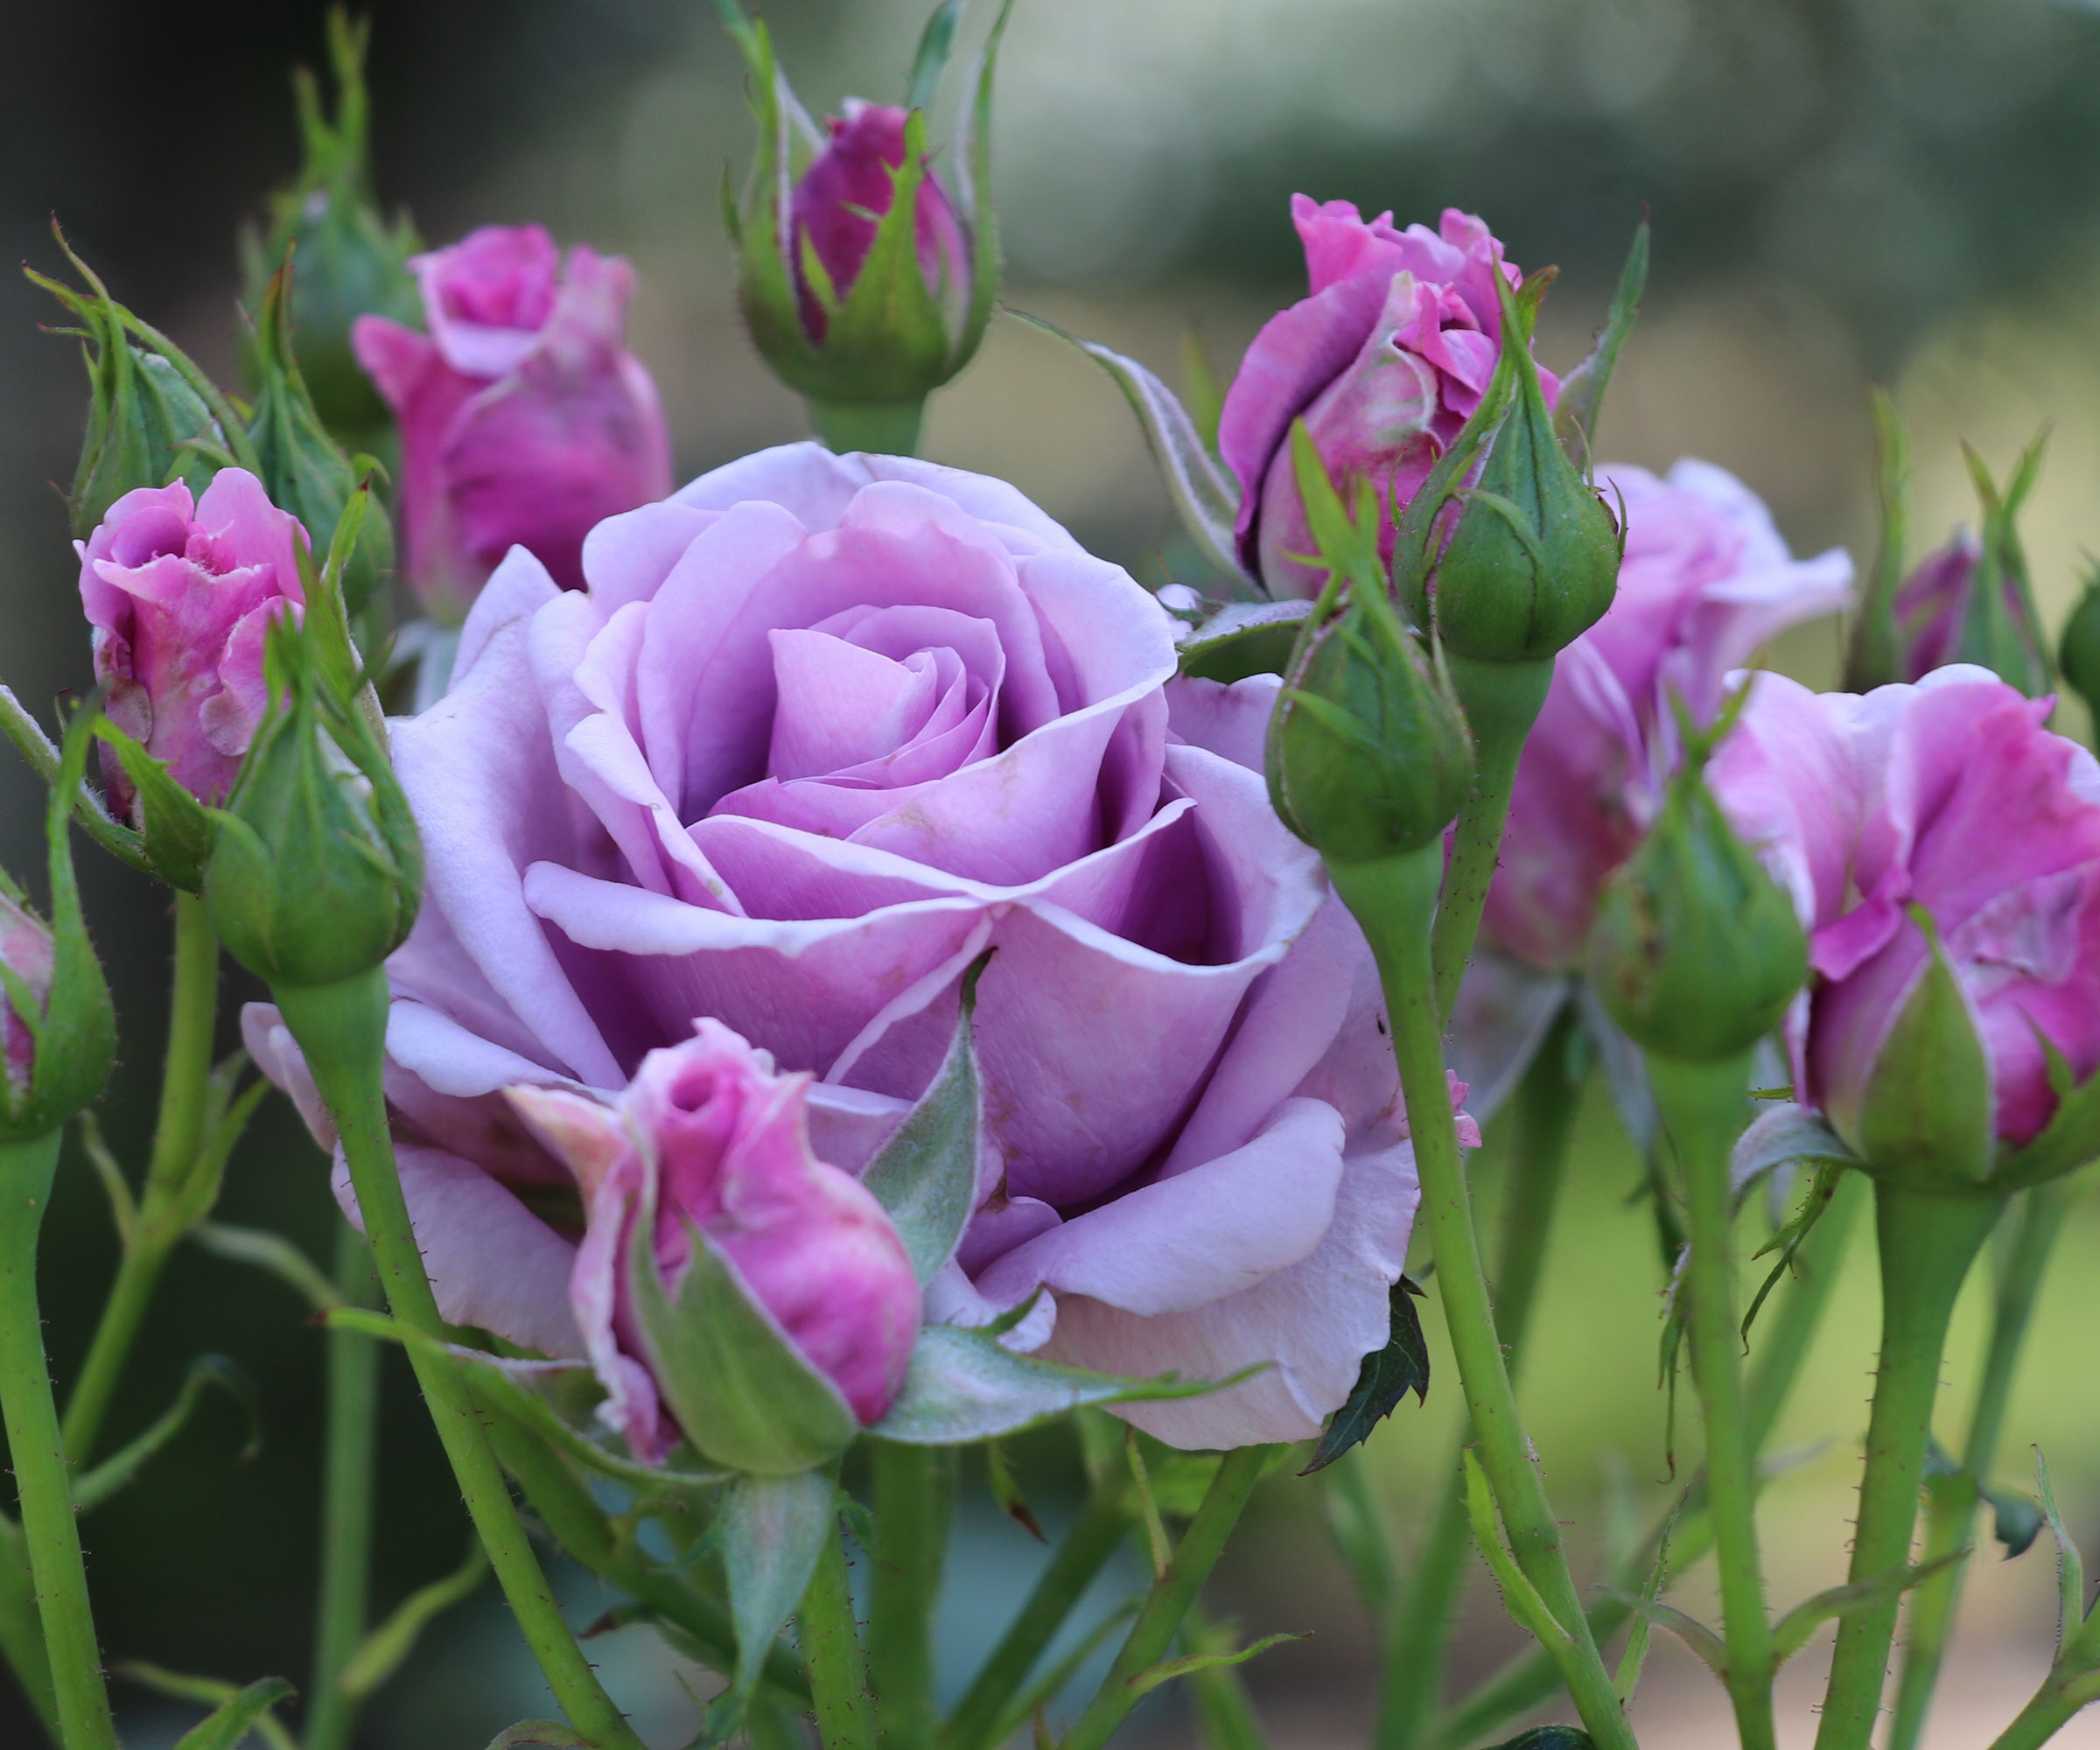 lavender rose in full bloom in garden